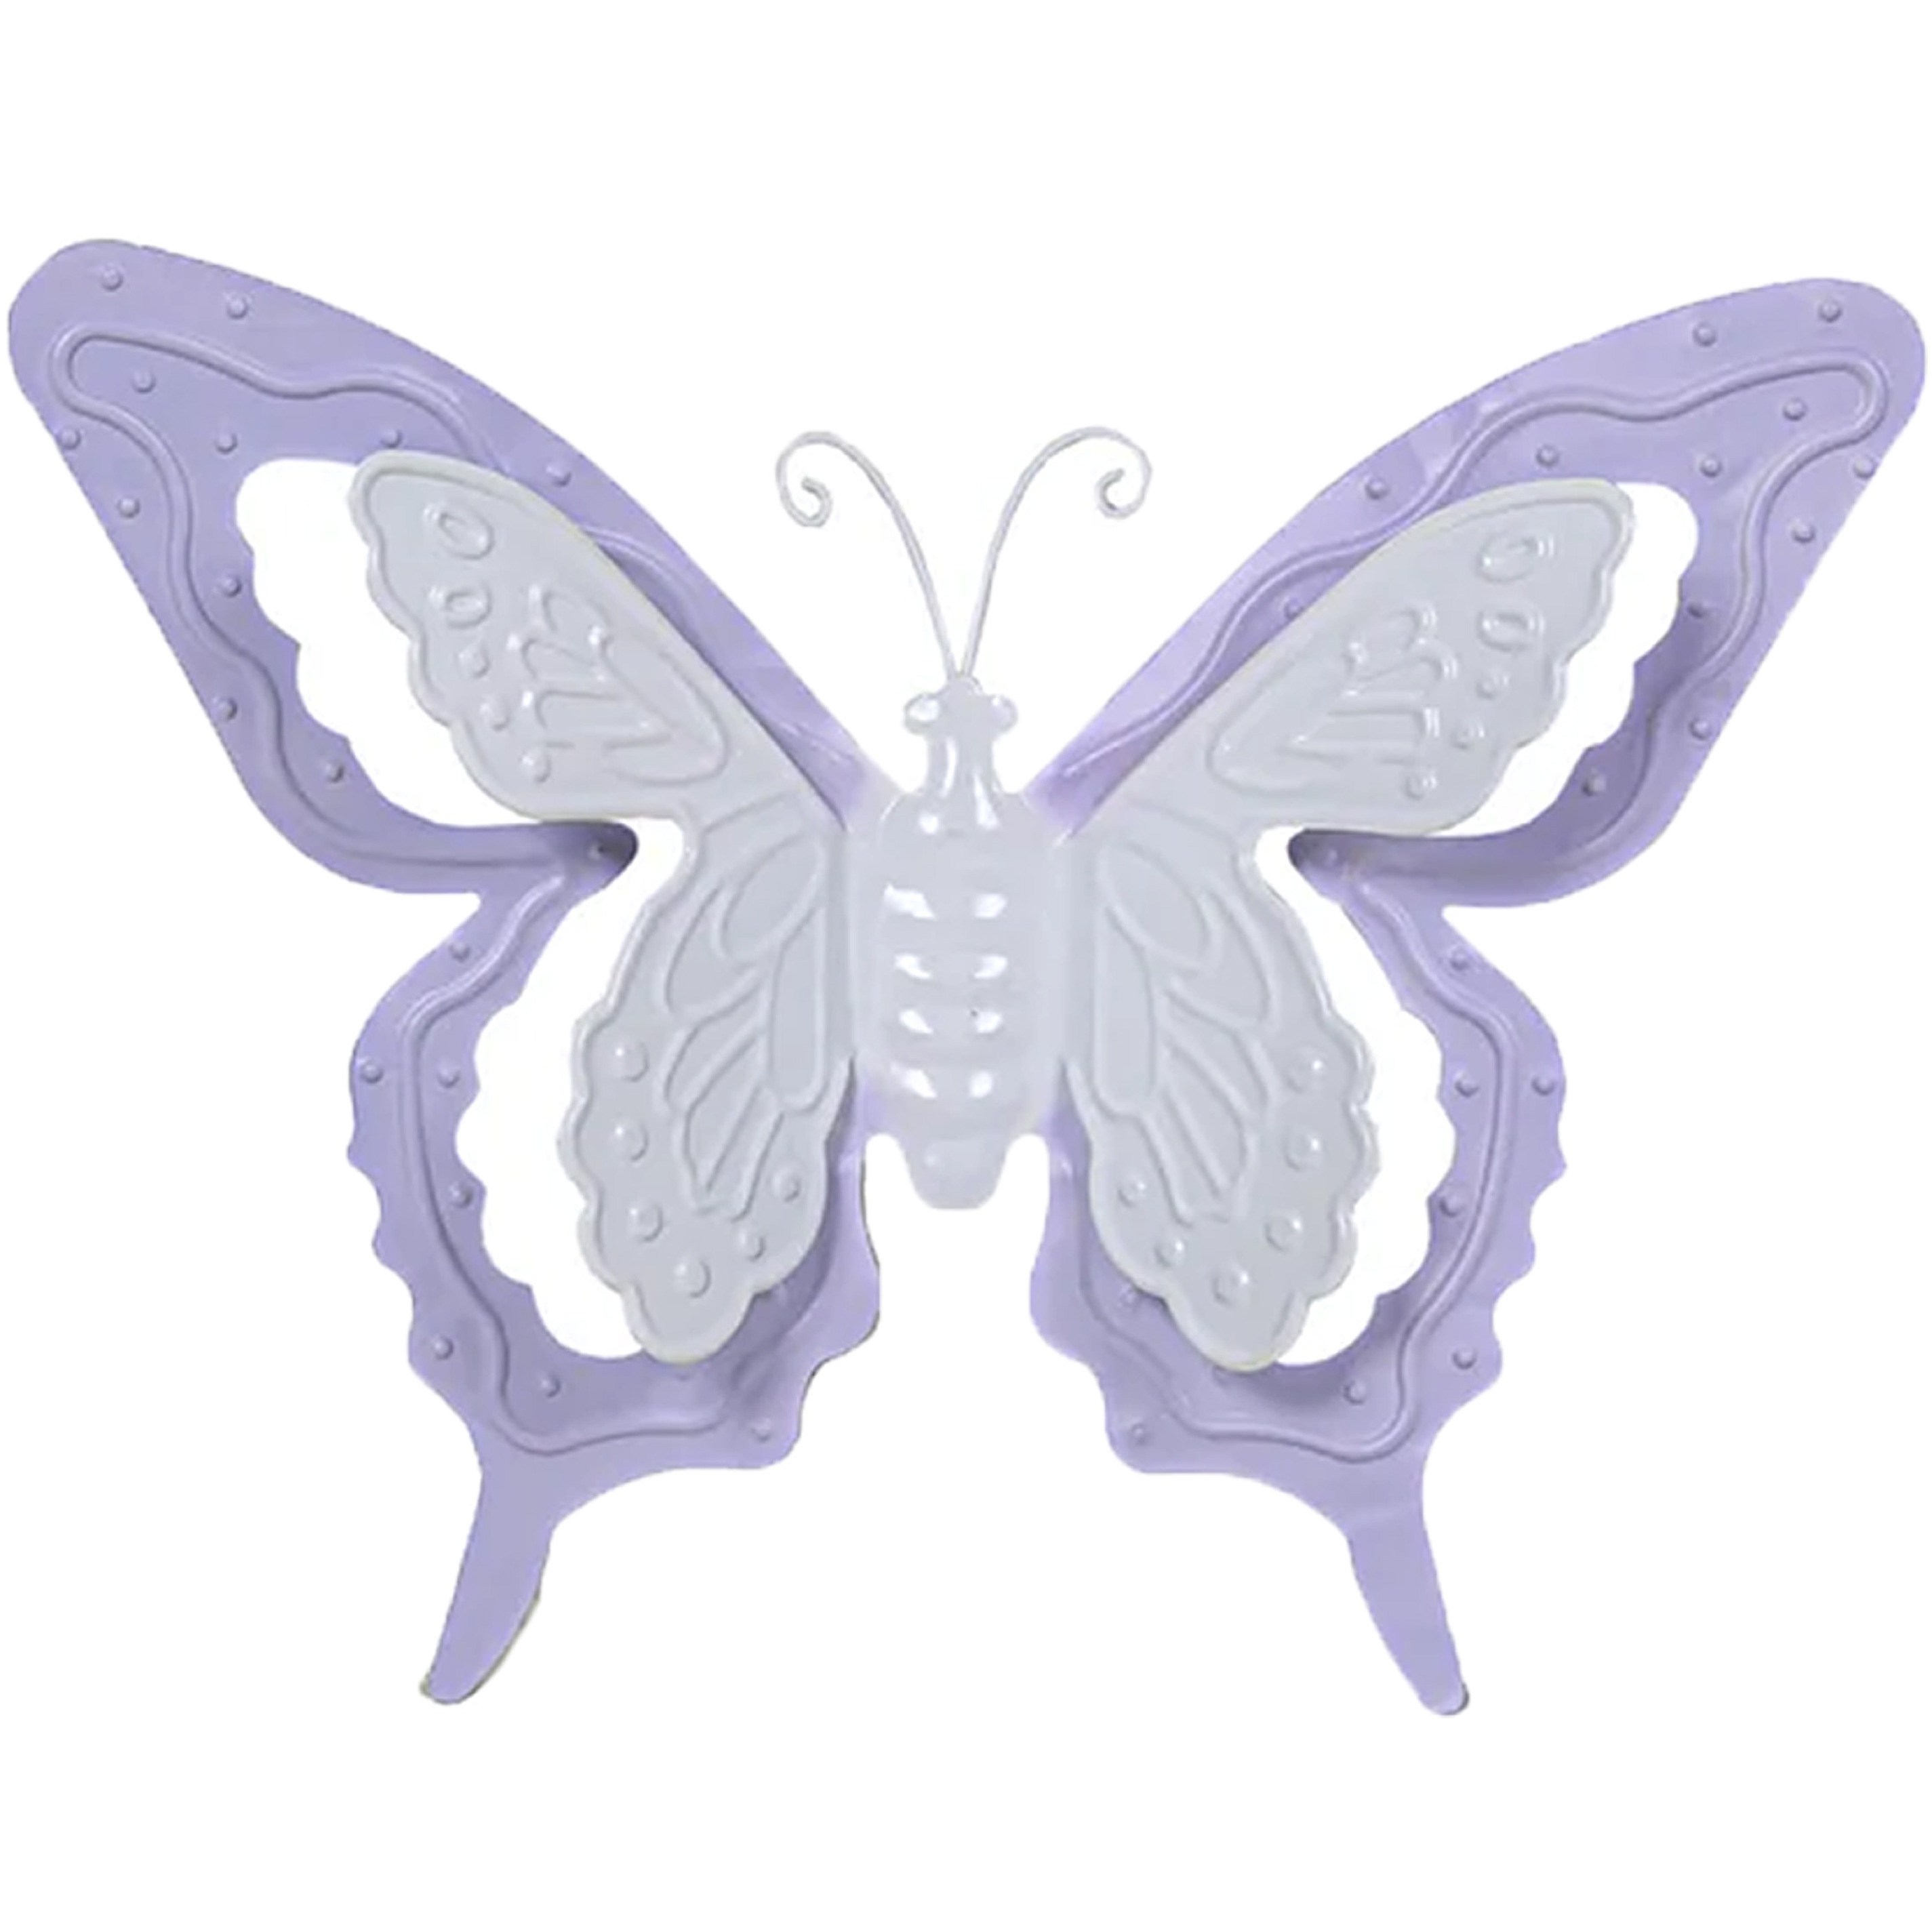 Tuin-schutting decoratie vlinder metaal lila paars 46 x 34 cm extra groot